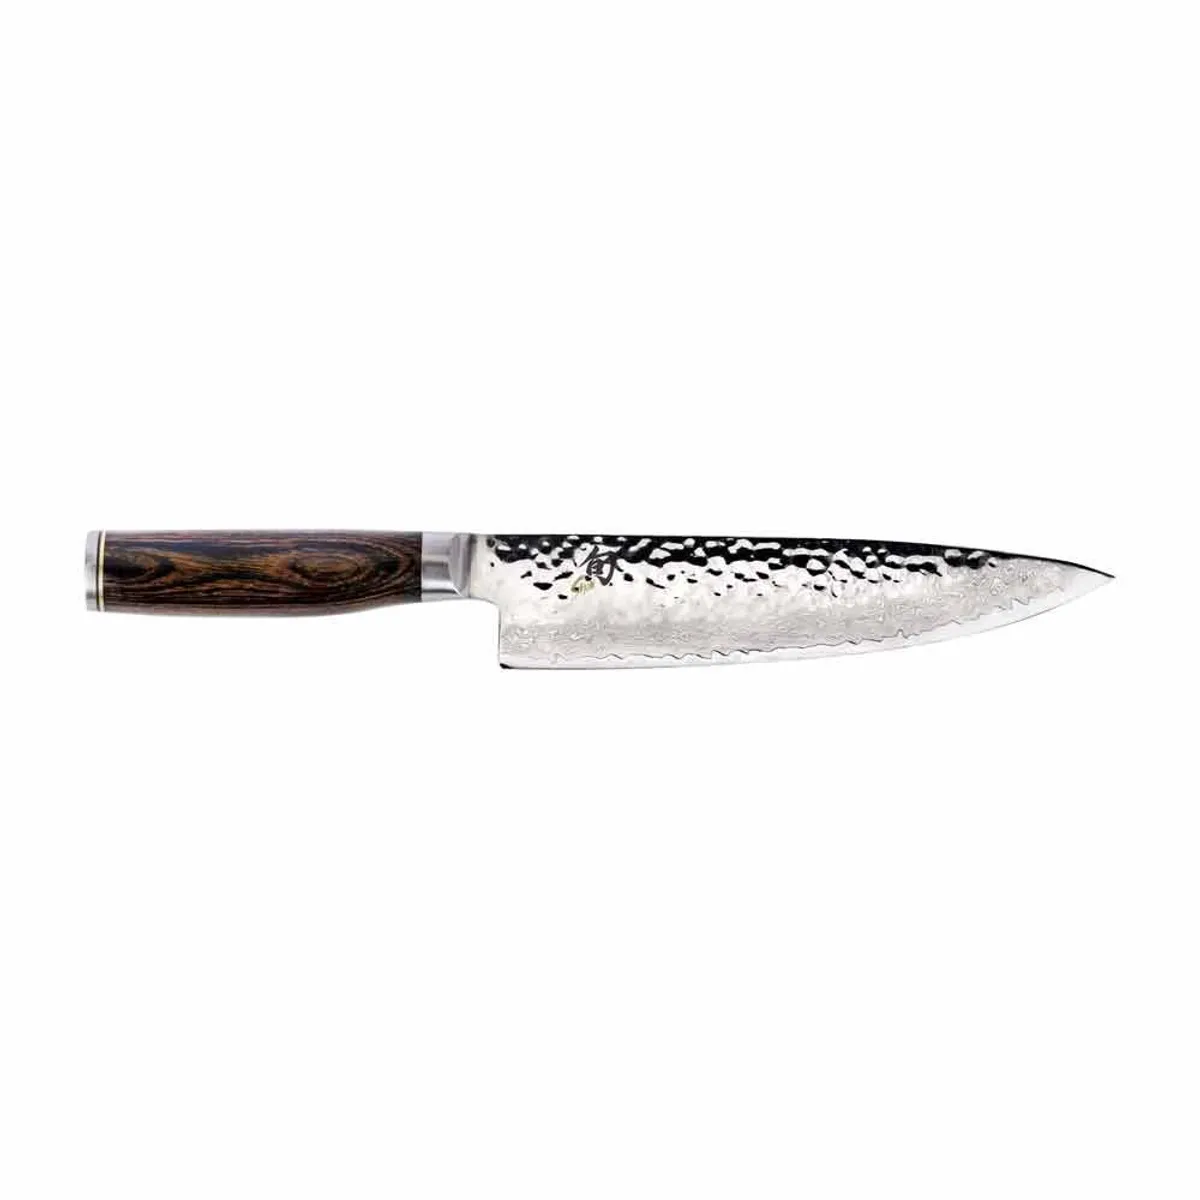 Shun Cutlery Premier 8” Chef’s Knife